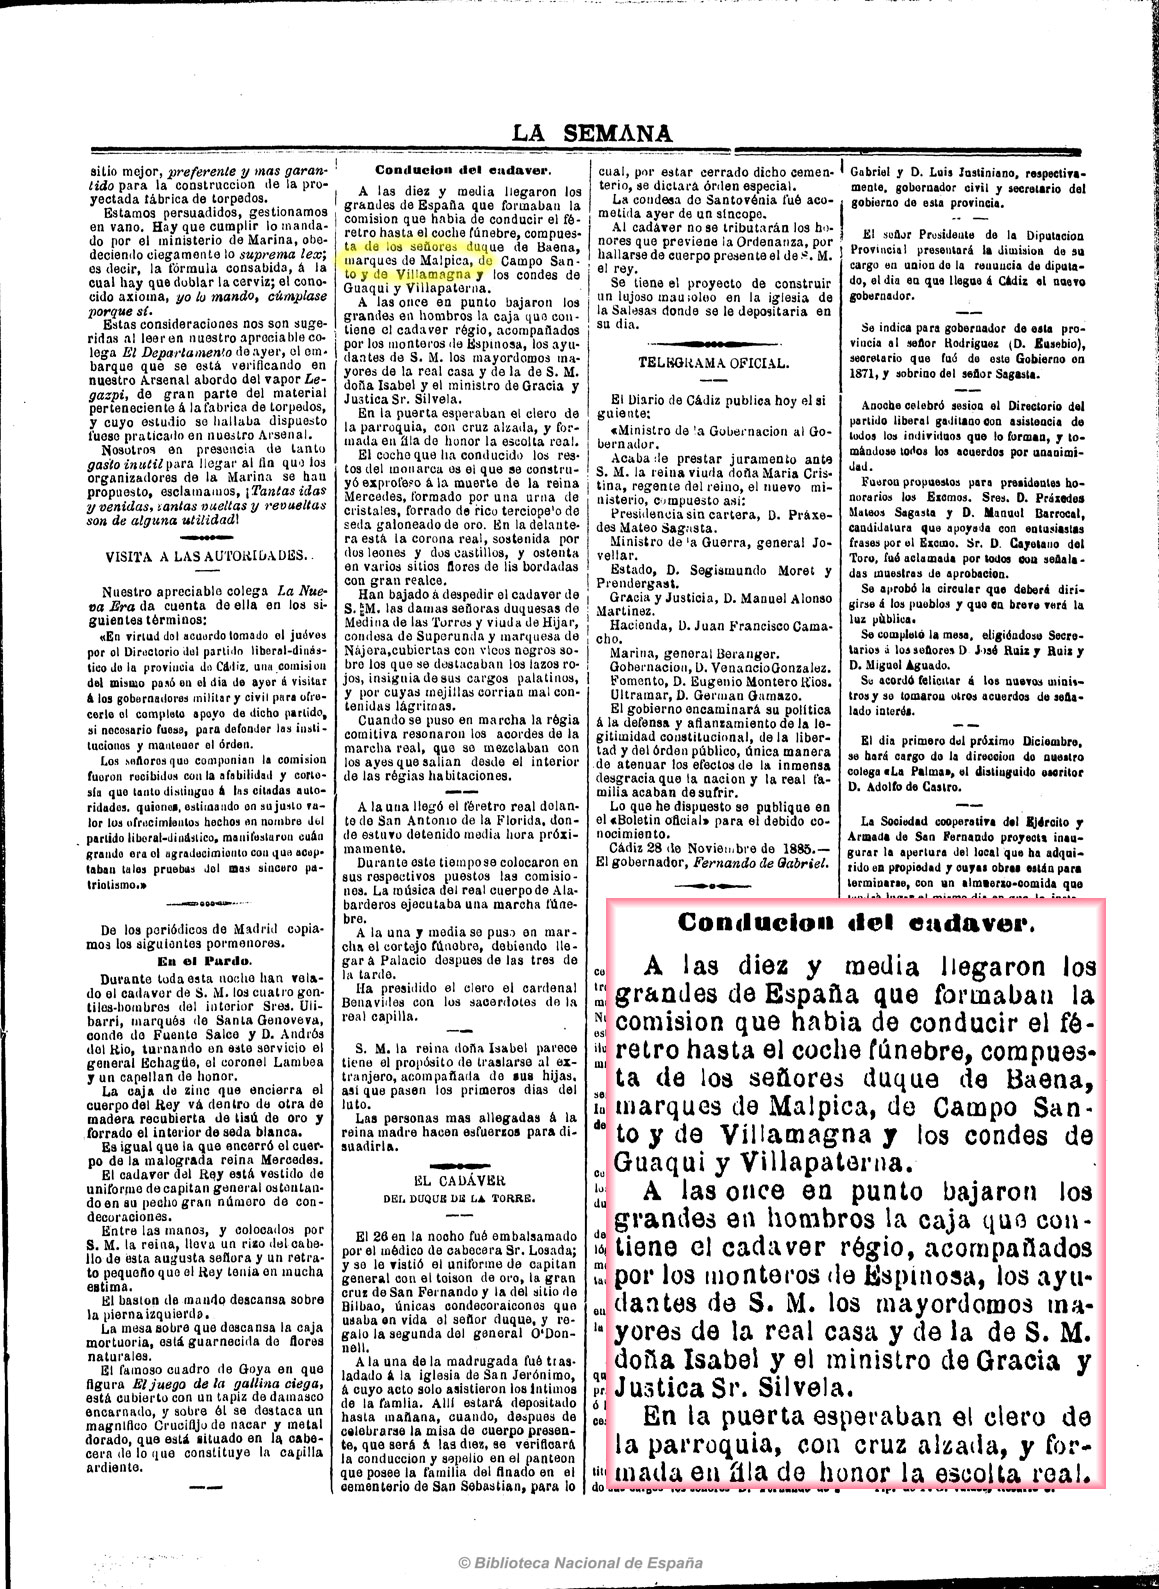 La Semana 29_11_1885, página 3. Comitiva fúnebre de AlfonsoXII